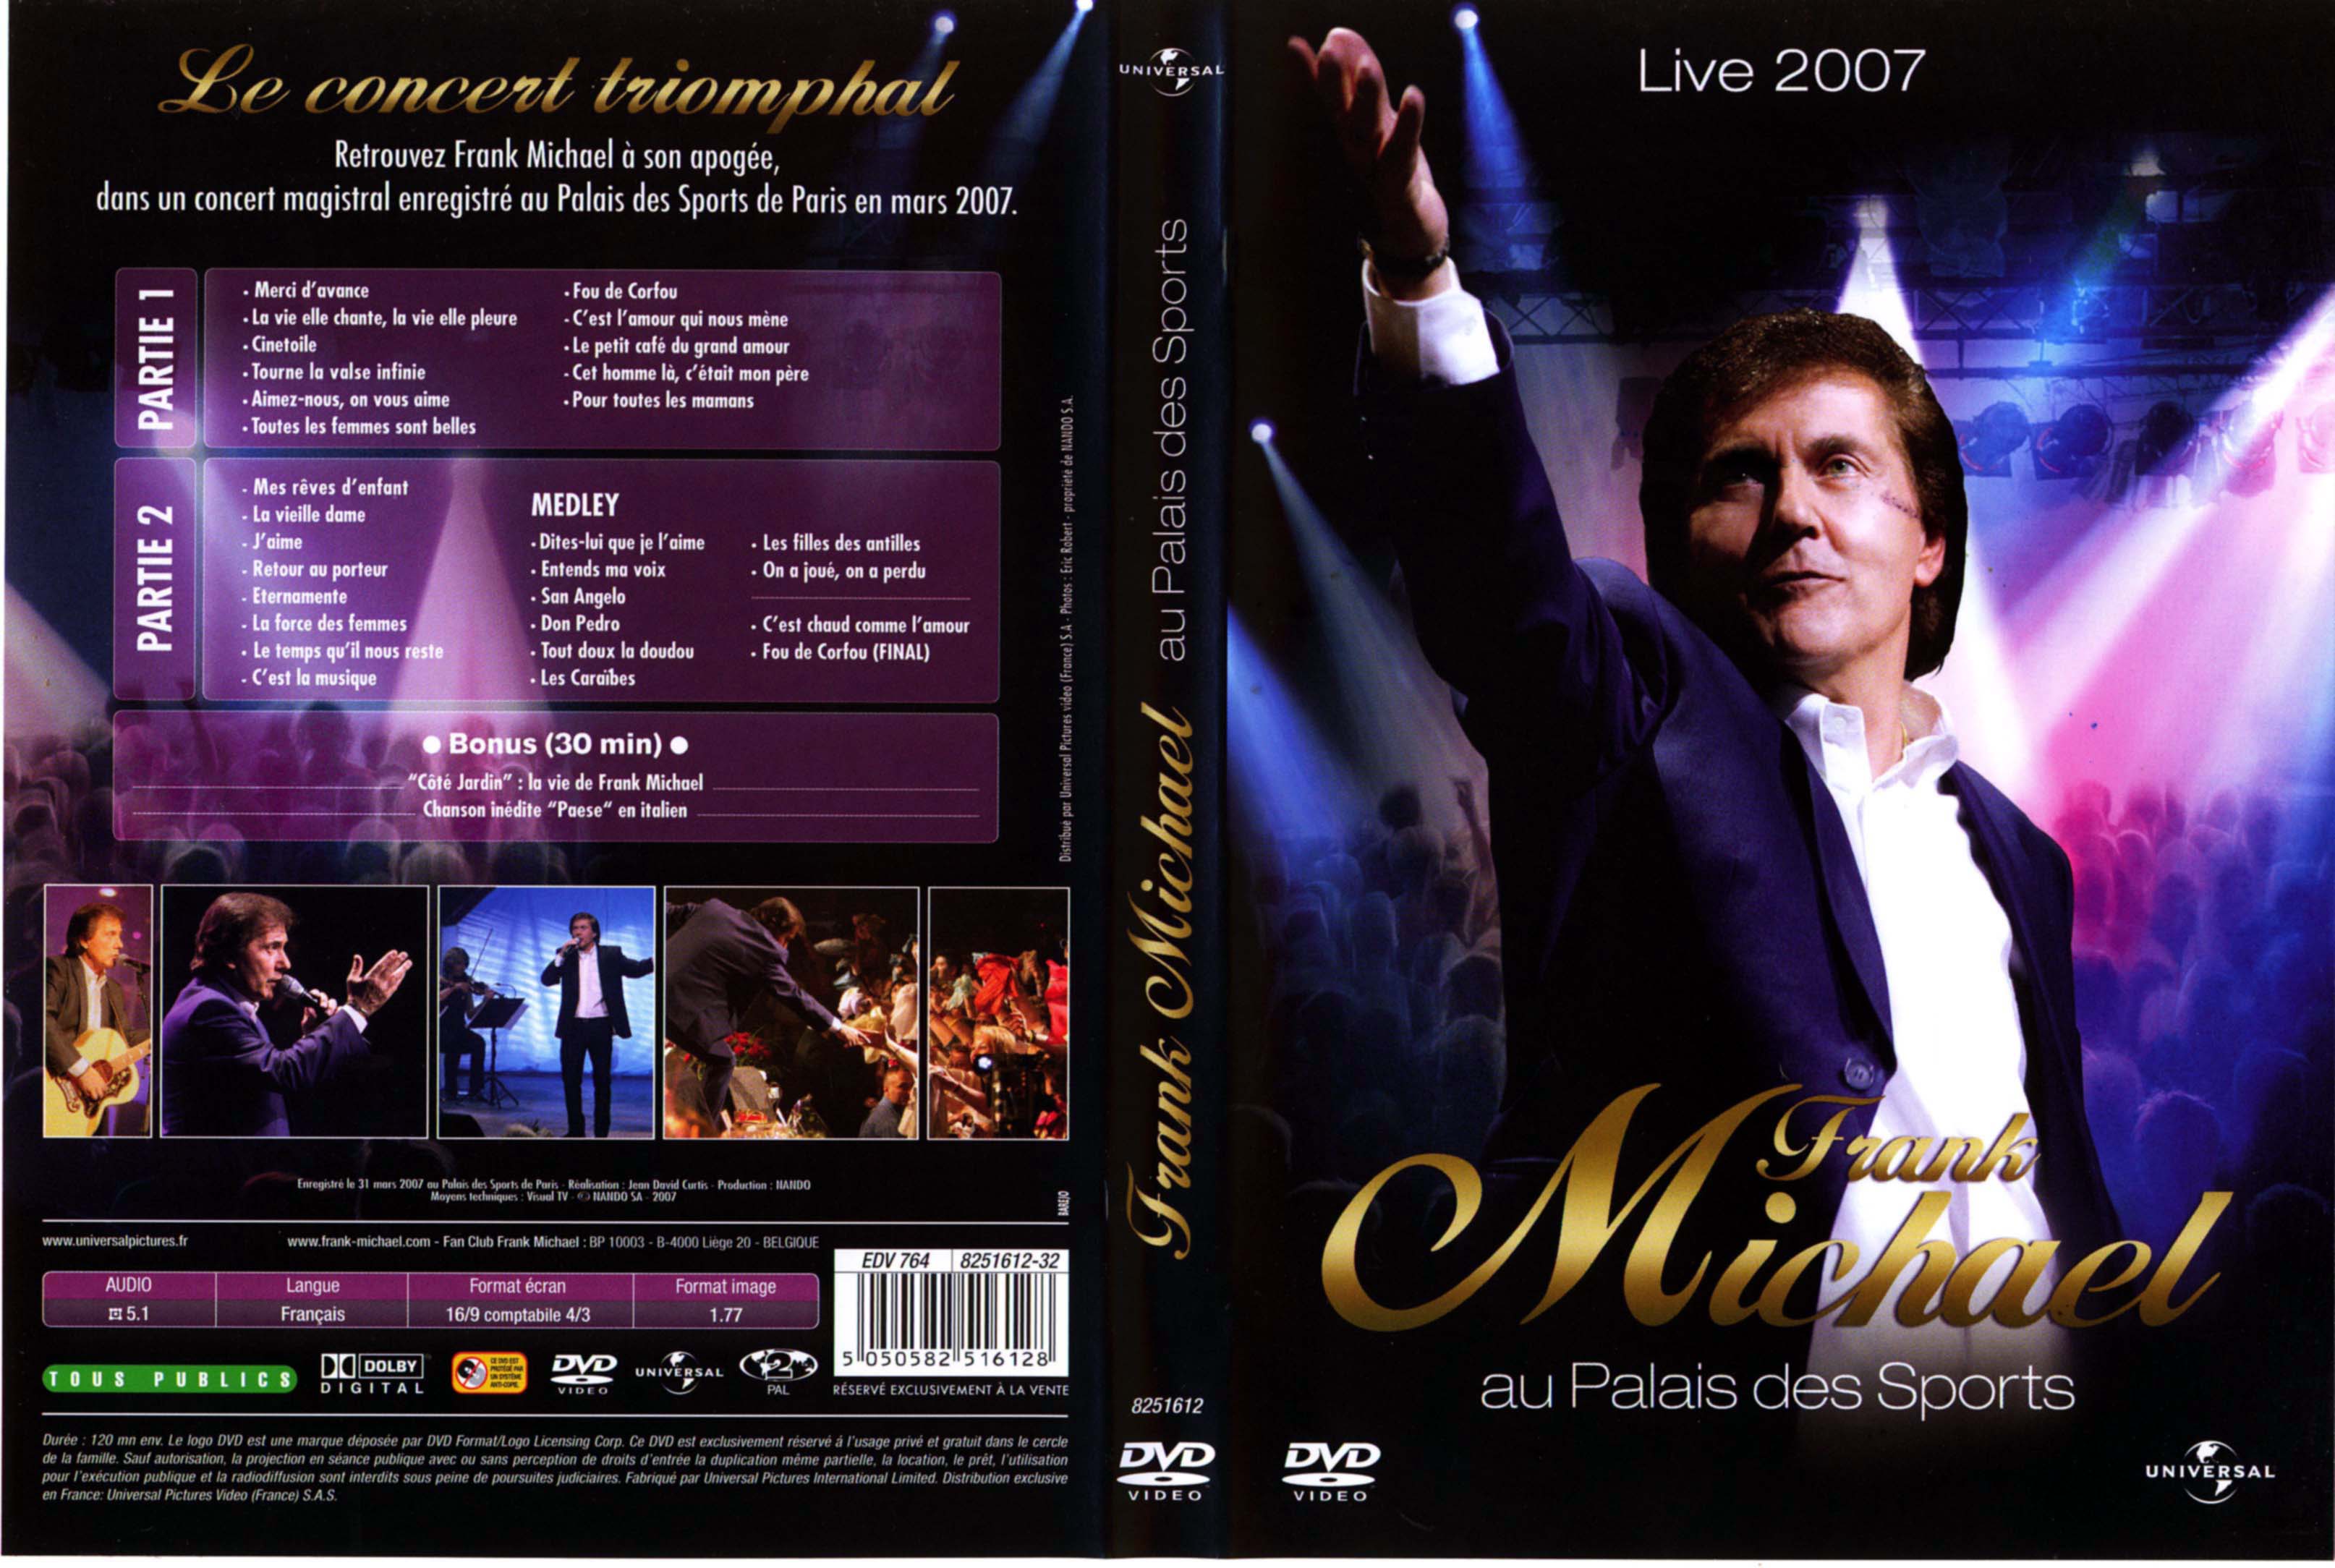 Jaquette DVD Frank Michael Live au palais des sports 2007